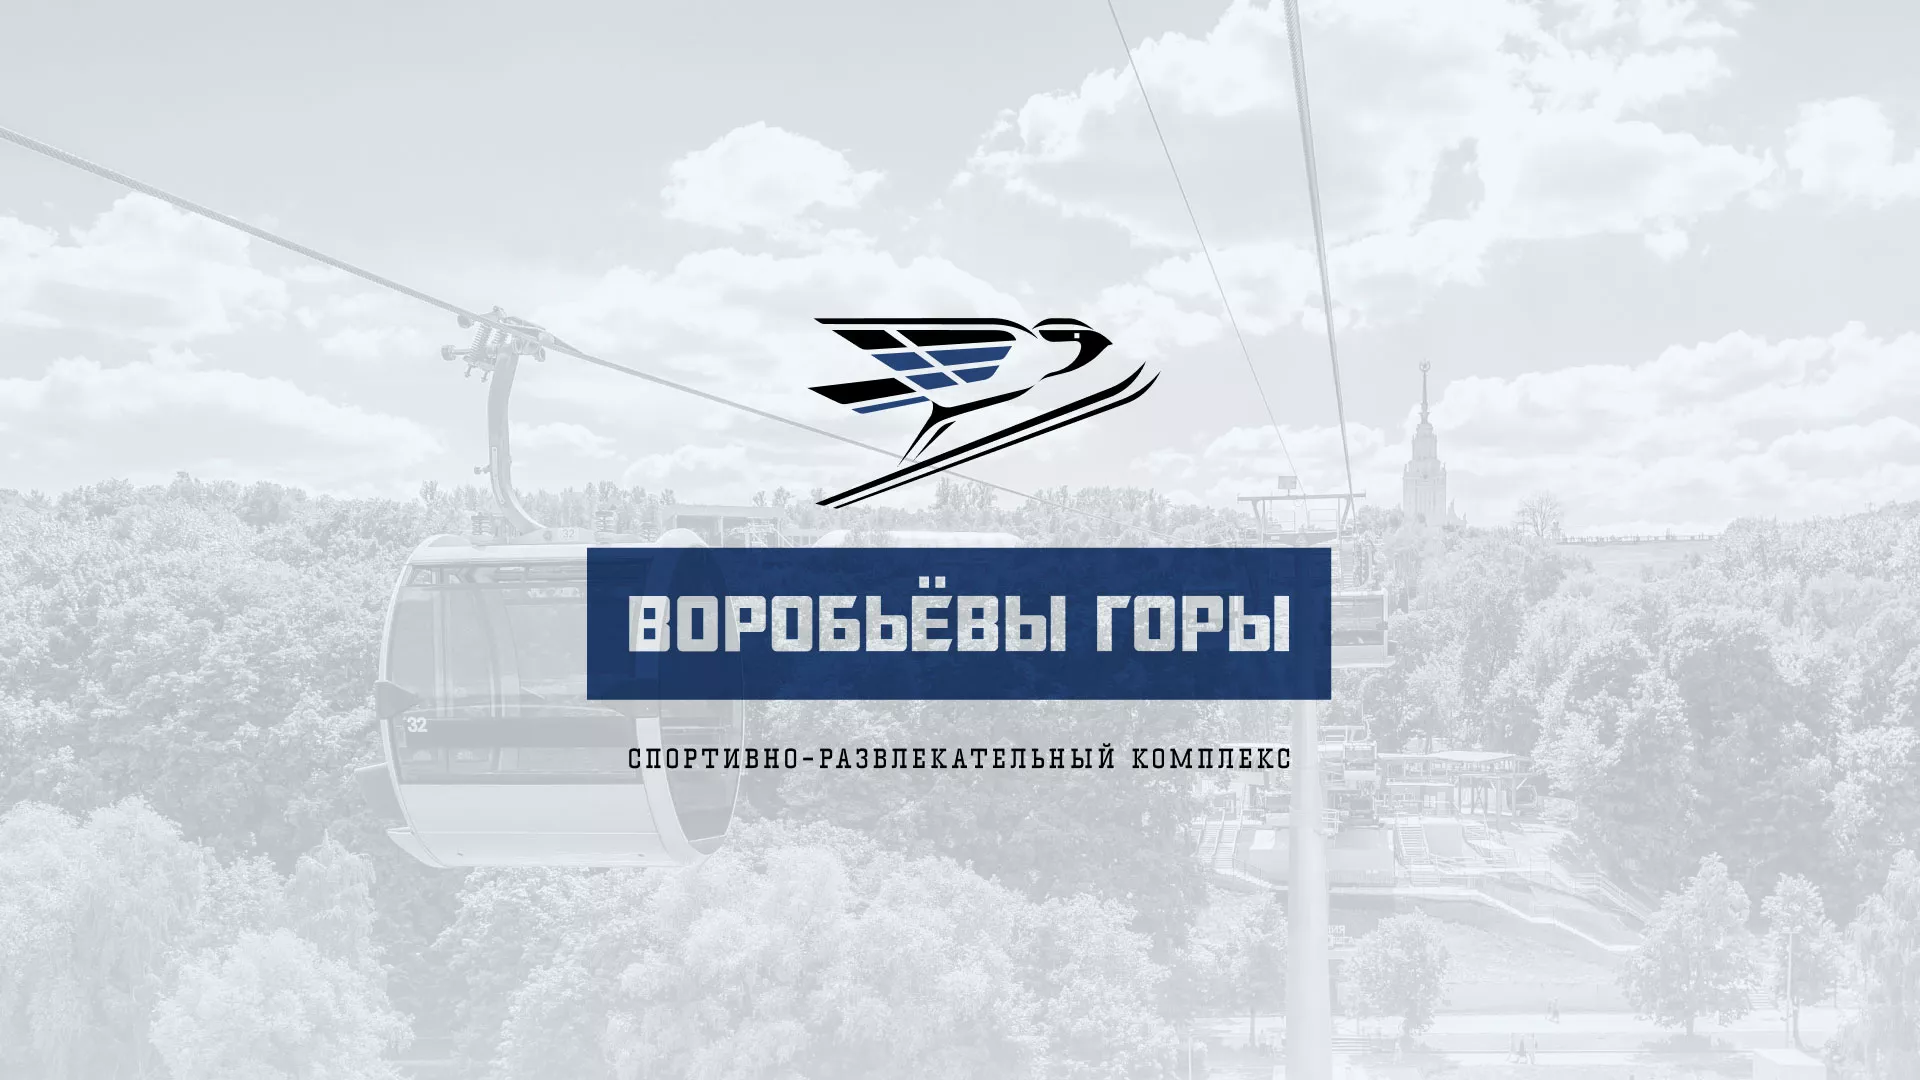 Разработка сайта в Саратове для спортивно-развлекательного комплекса «Воробьёвы горы»